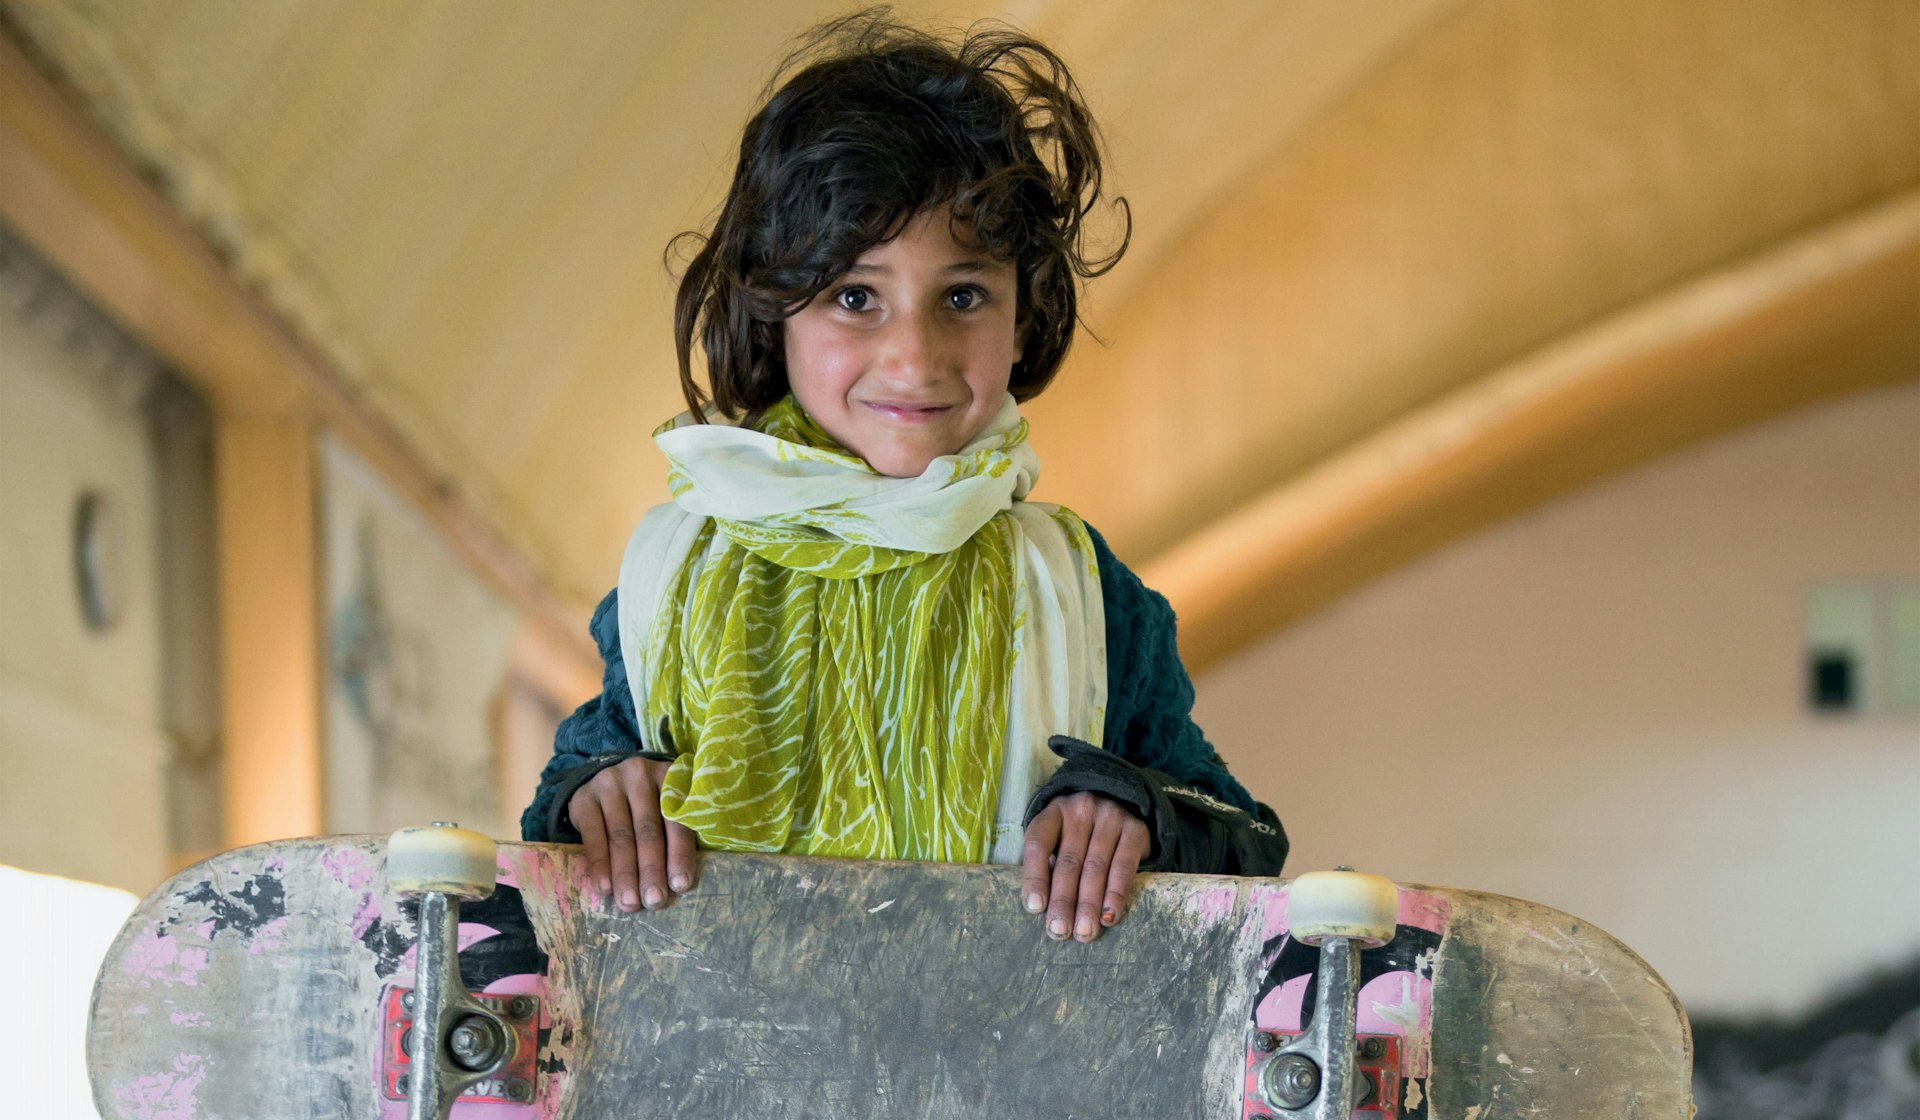 Skateboarding is empowering girls in Afghanistan